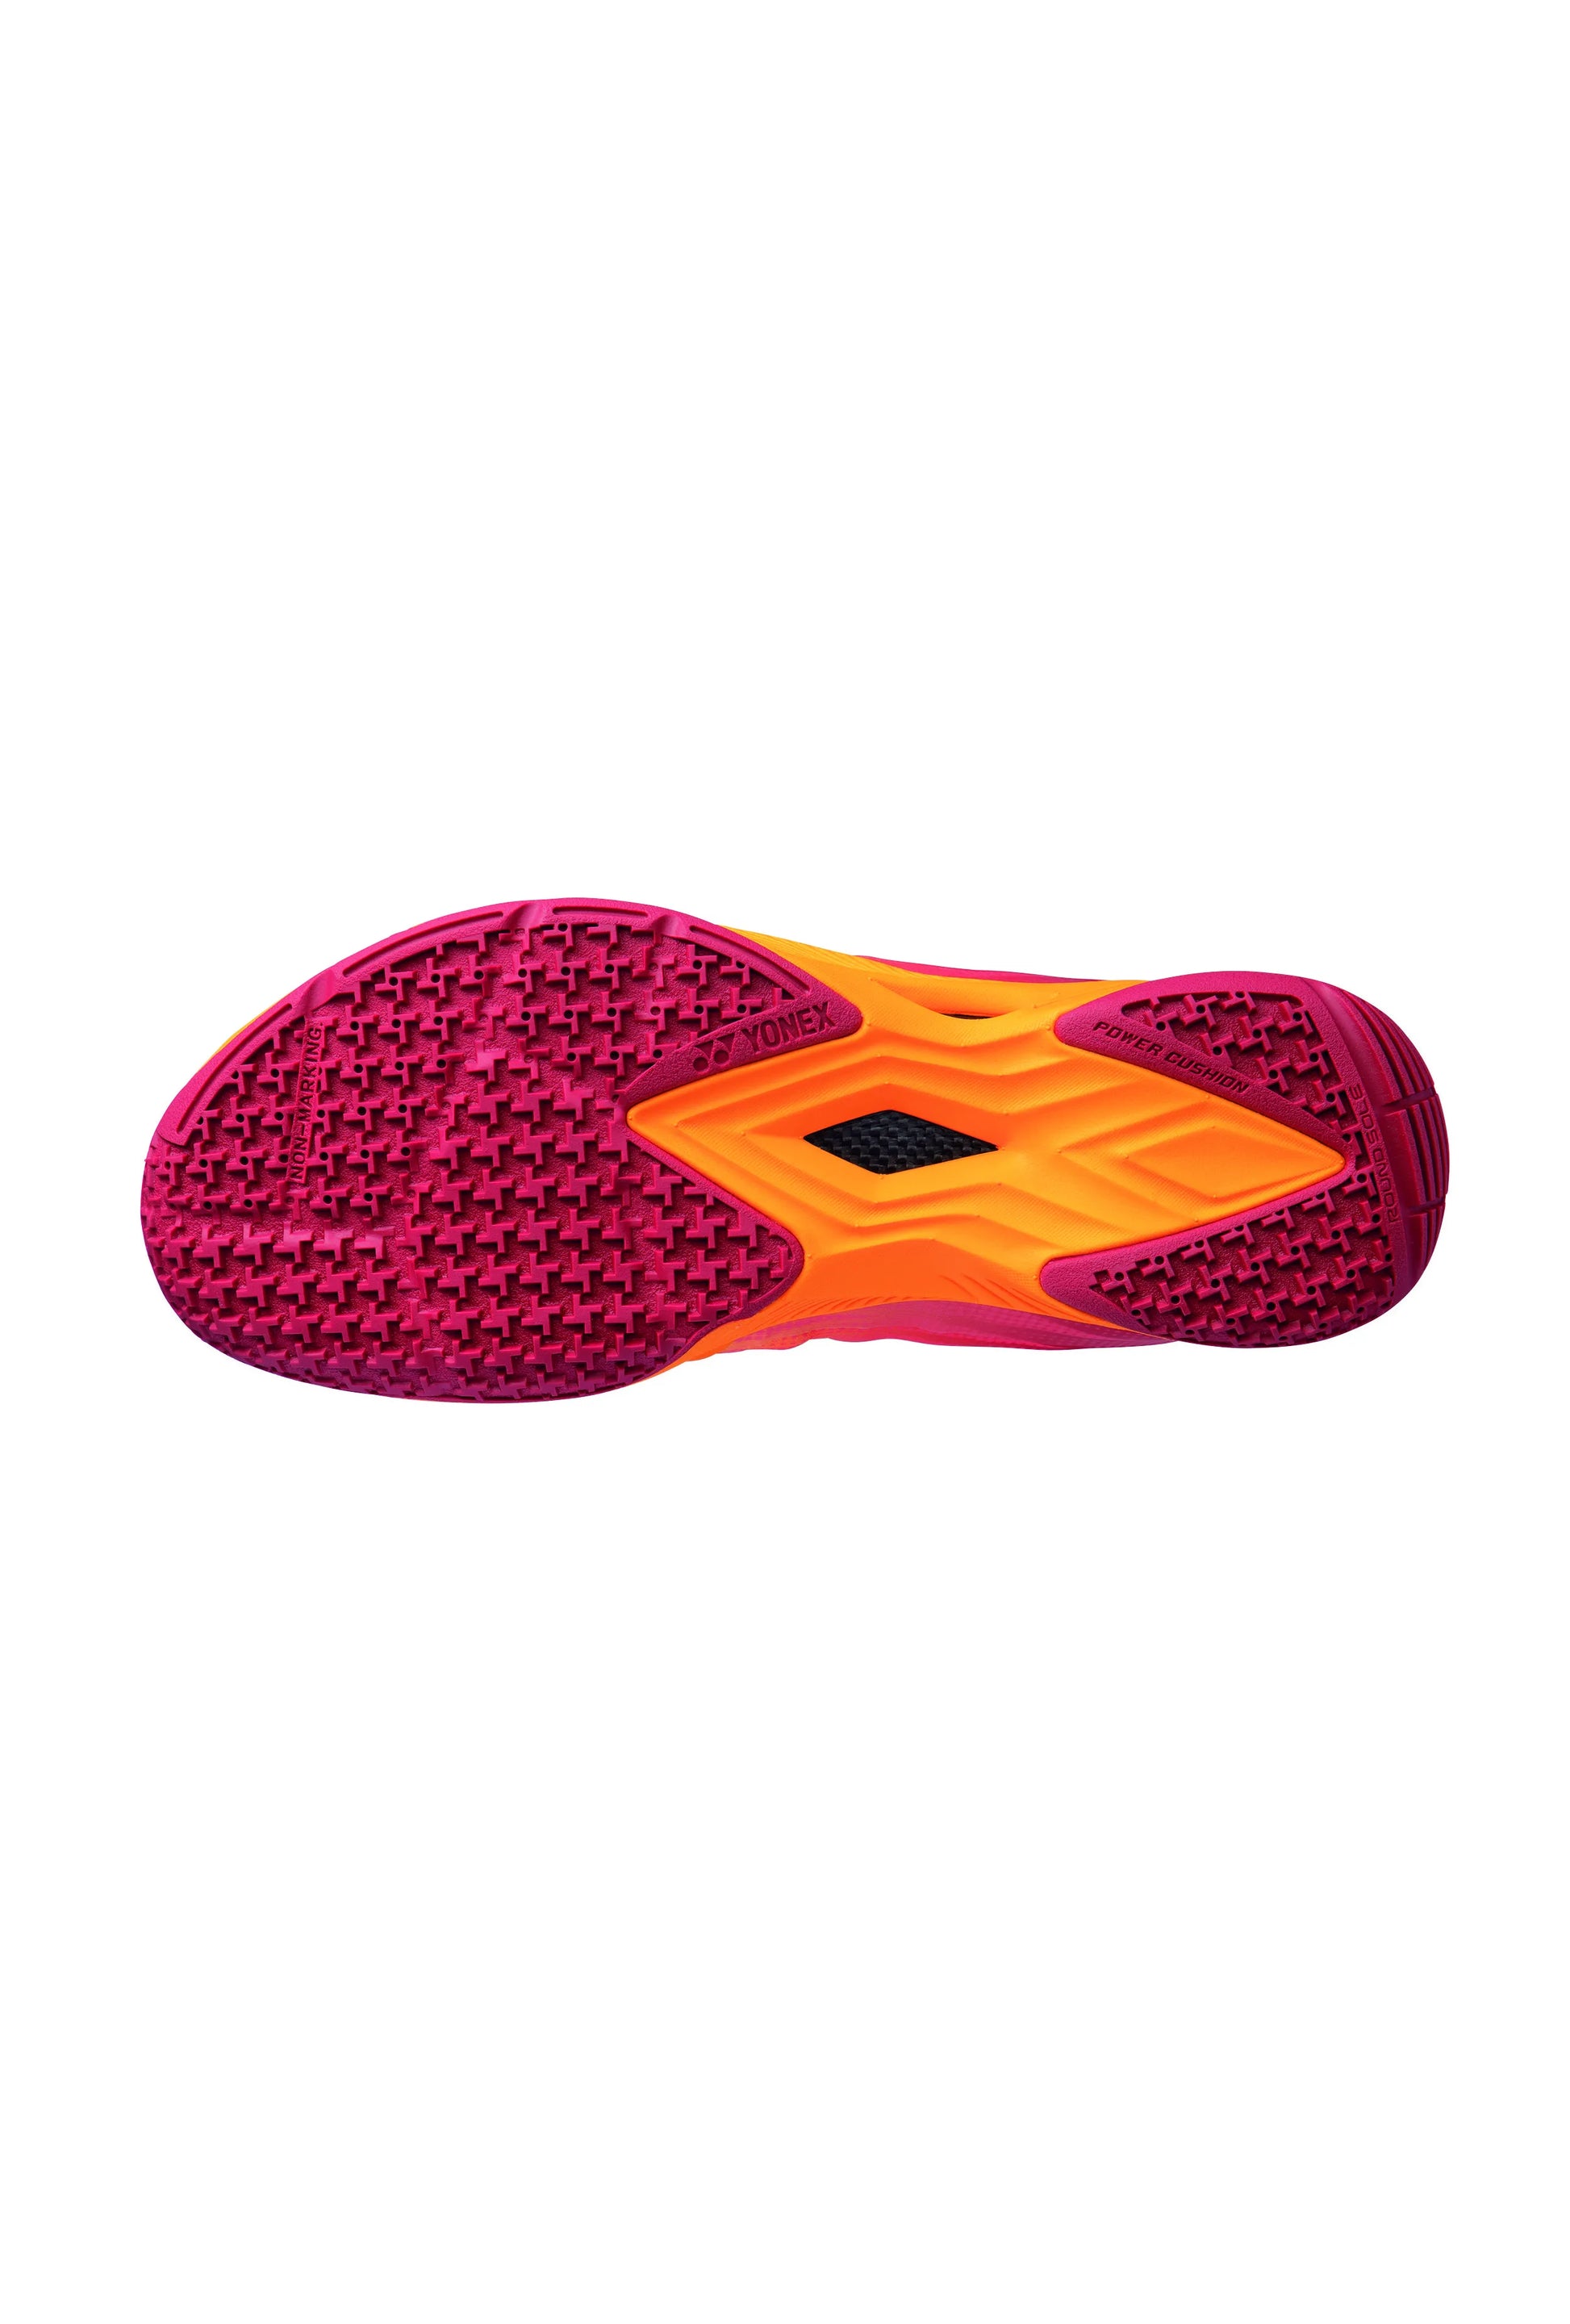 YONEX Badminton Shoes POWER CUSHION AERUS Z2 MENS [Orange Red] - Max Sports